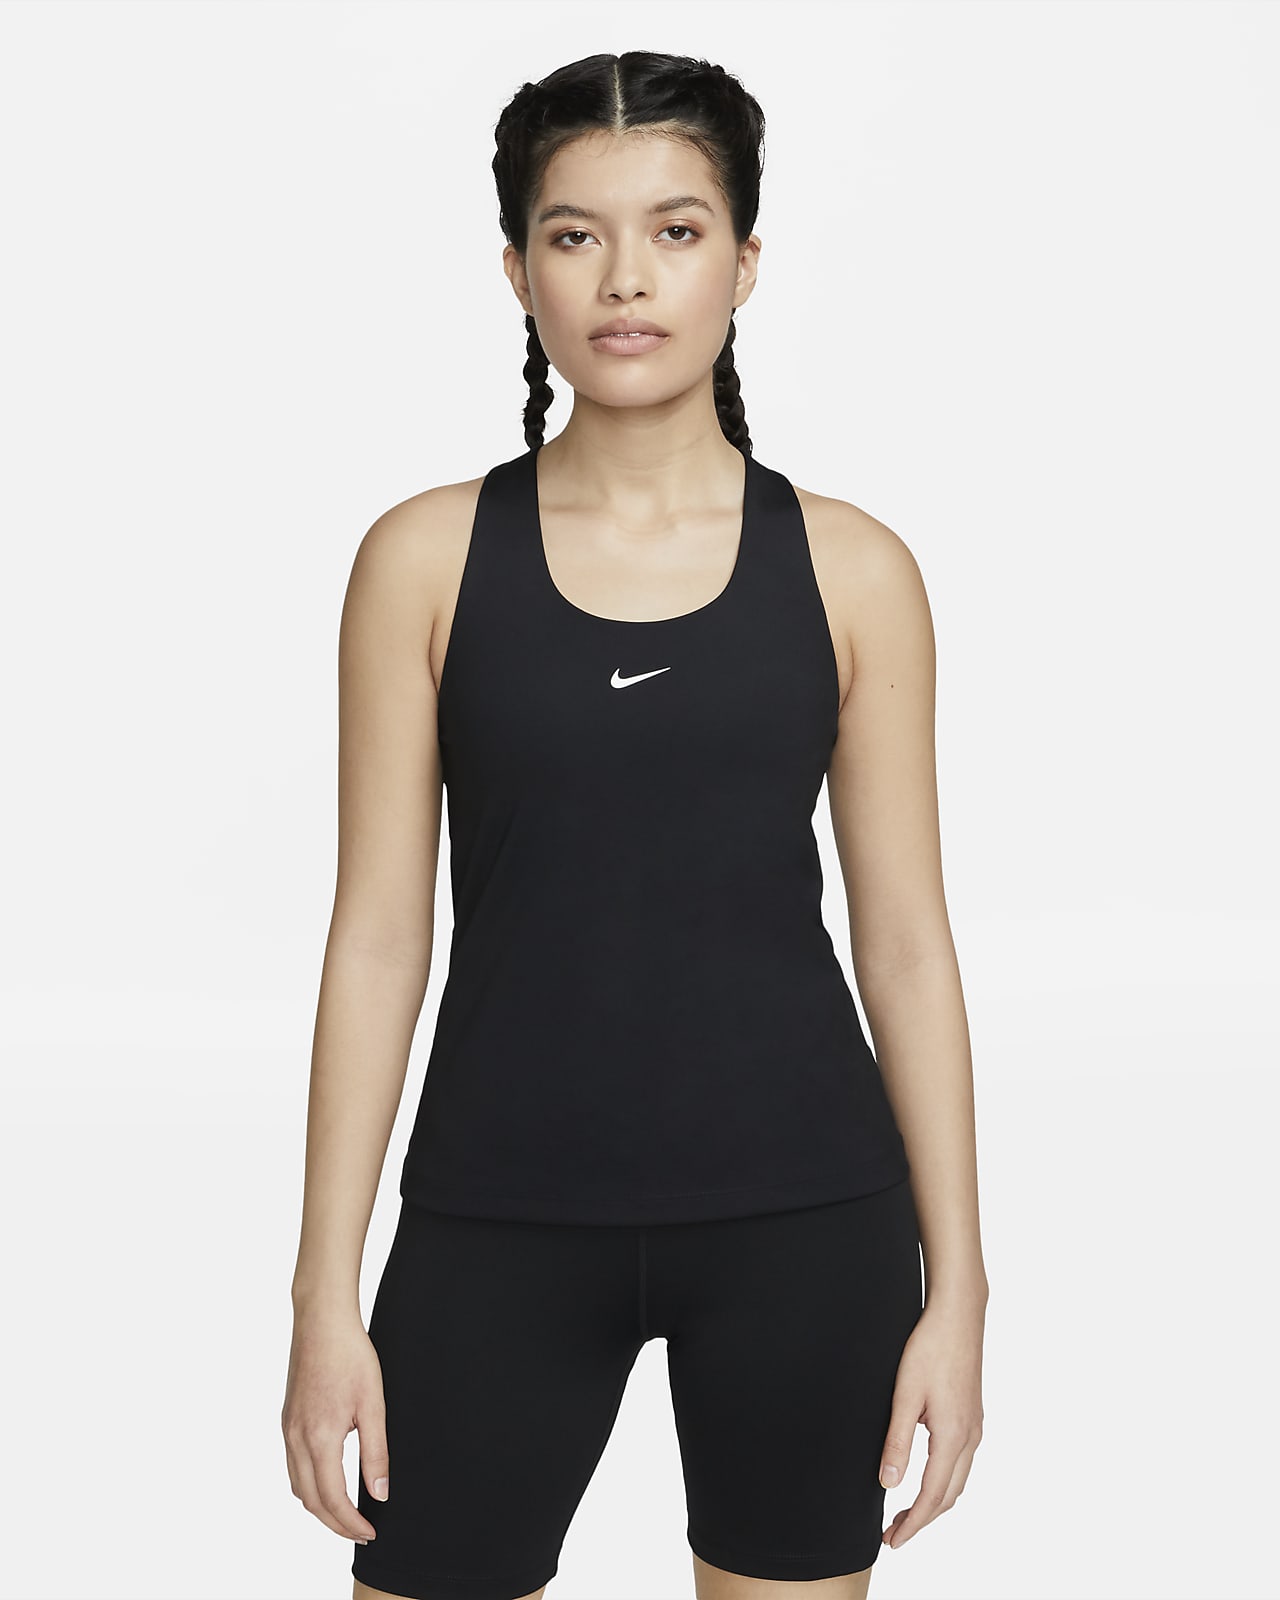 เสื้อกล้ามสปอร์ตบราผู้หญิงซัพพอร์ตระดับกลางเสริมฟองน้ำ Nike Swoosh